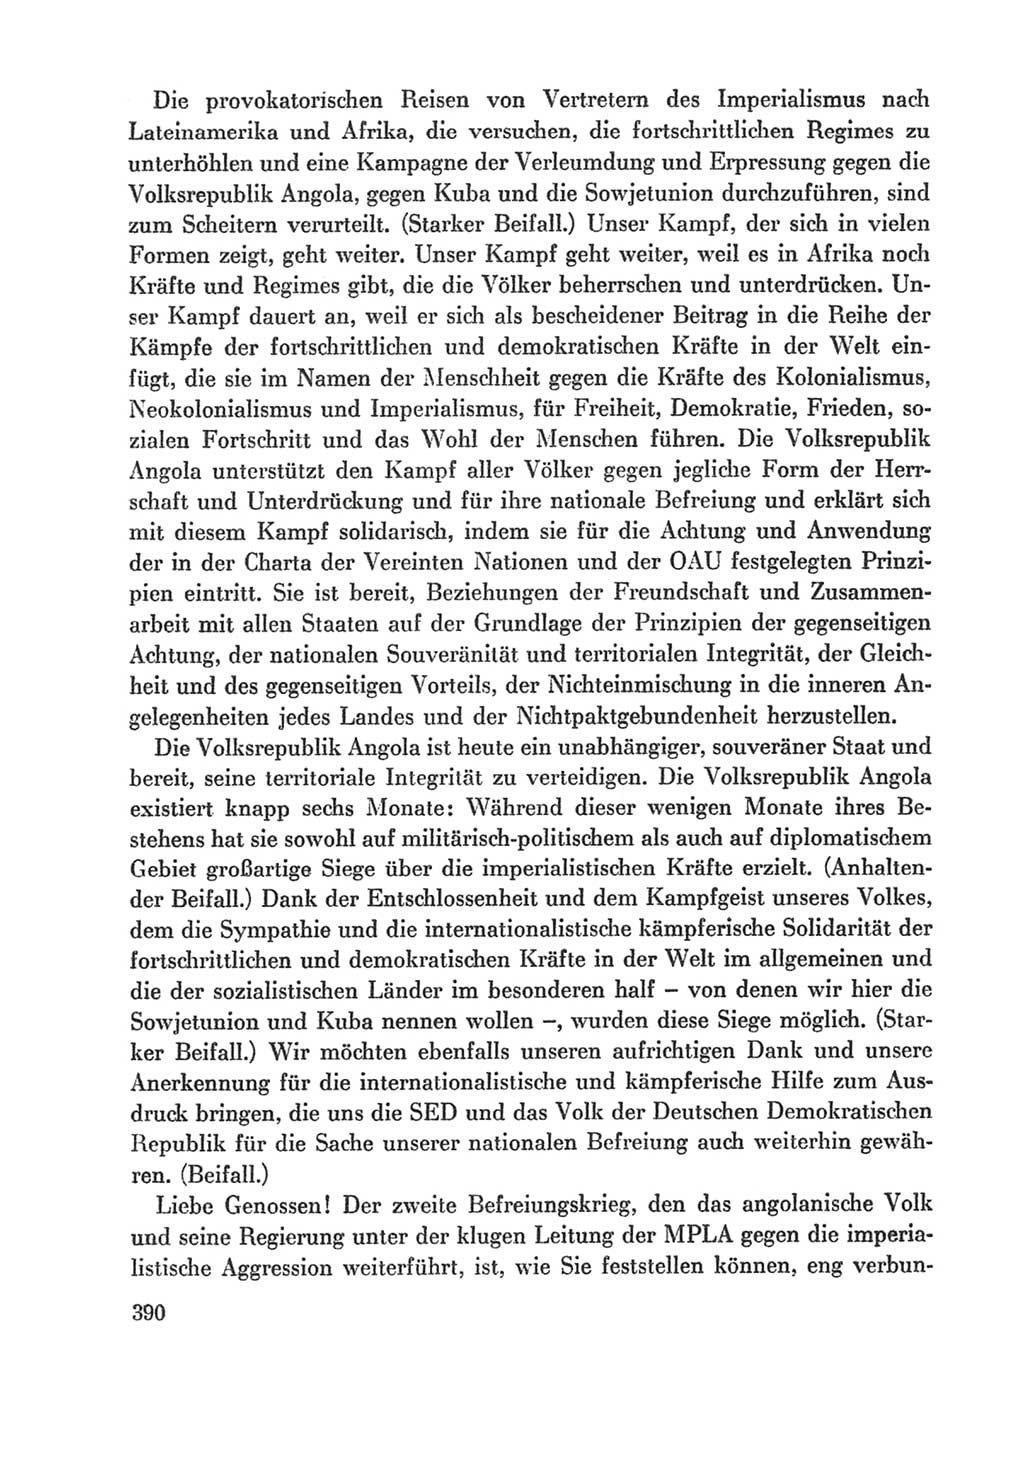 Protokoll der Verhandlungen des Ⅸ. Parteitages der Sozialistischen Einheitspartei Deutschlands (SED) [Deutsche Demokratische Republik (DDR)] 1976, Band 1, Seite 390 (Prot. Verh. Ⅸ. PT SED DDR 1976, Bd. 1, S. 390)